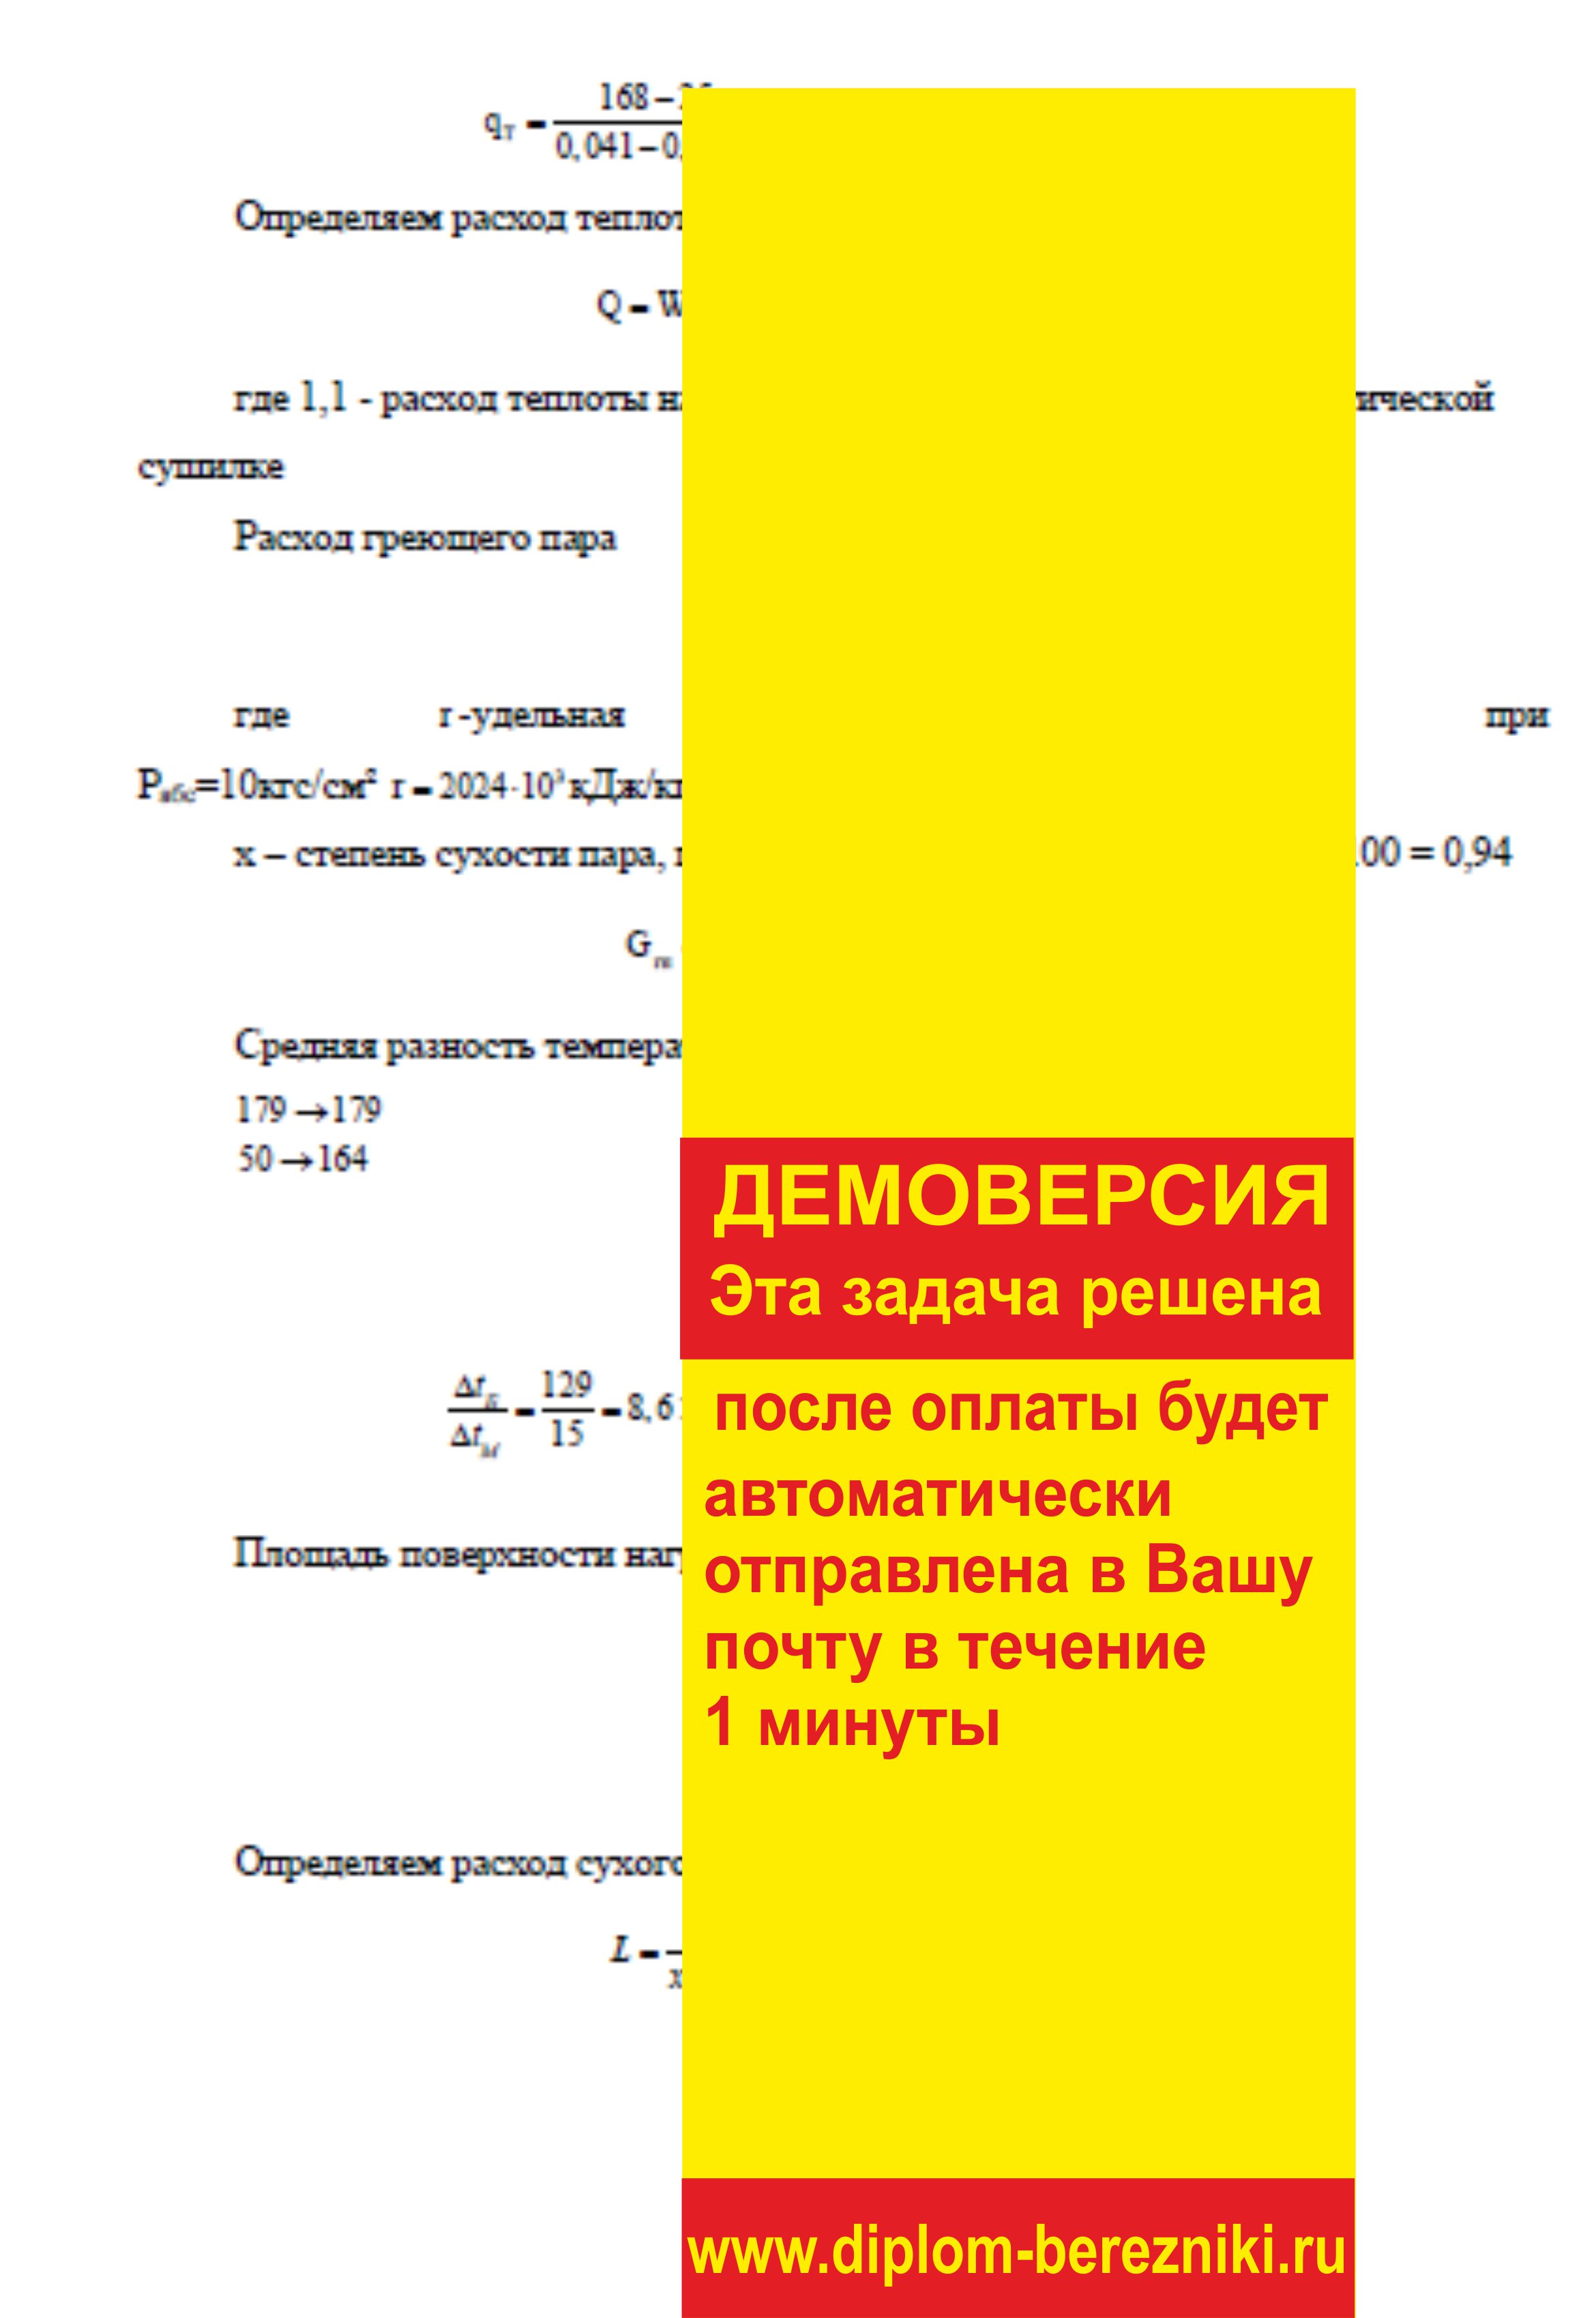 Решение задачи 10.33 по ПАХТ из задачника Павлова Романкова Носкова